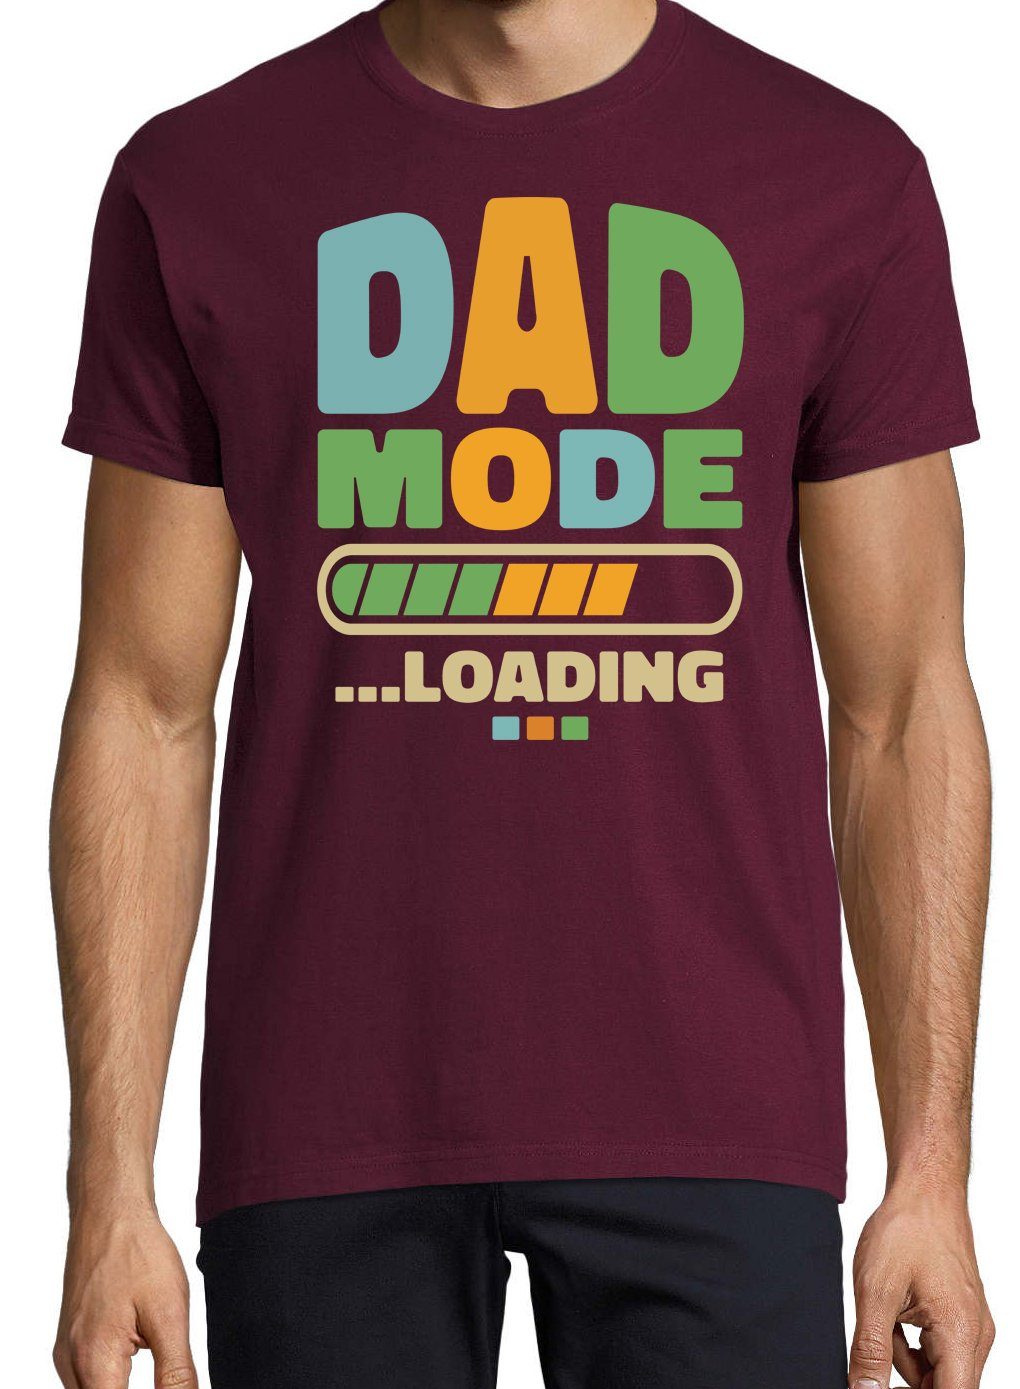 DAD Youth T-Shirt Herren Designz Mode im Loading Burgund Shirt Fun-Look